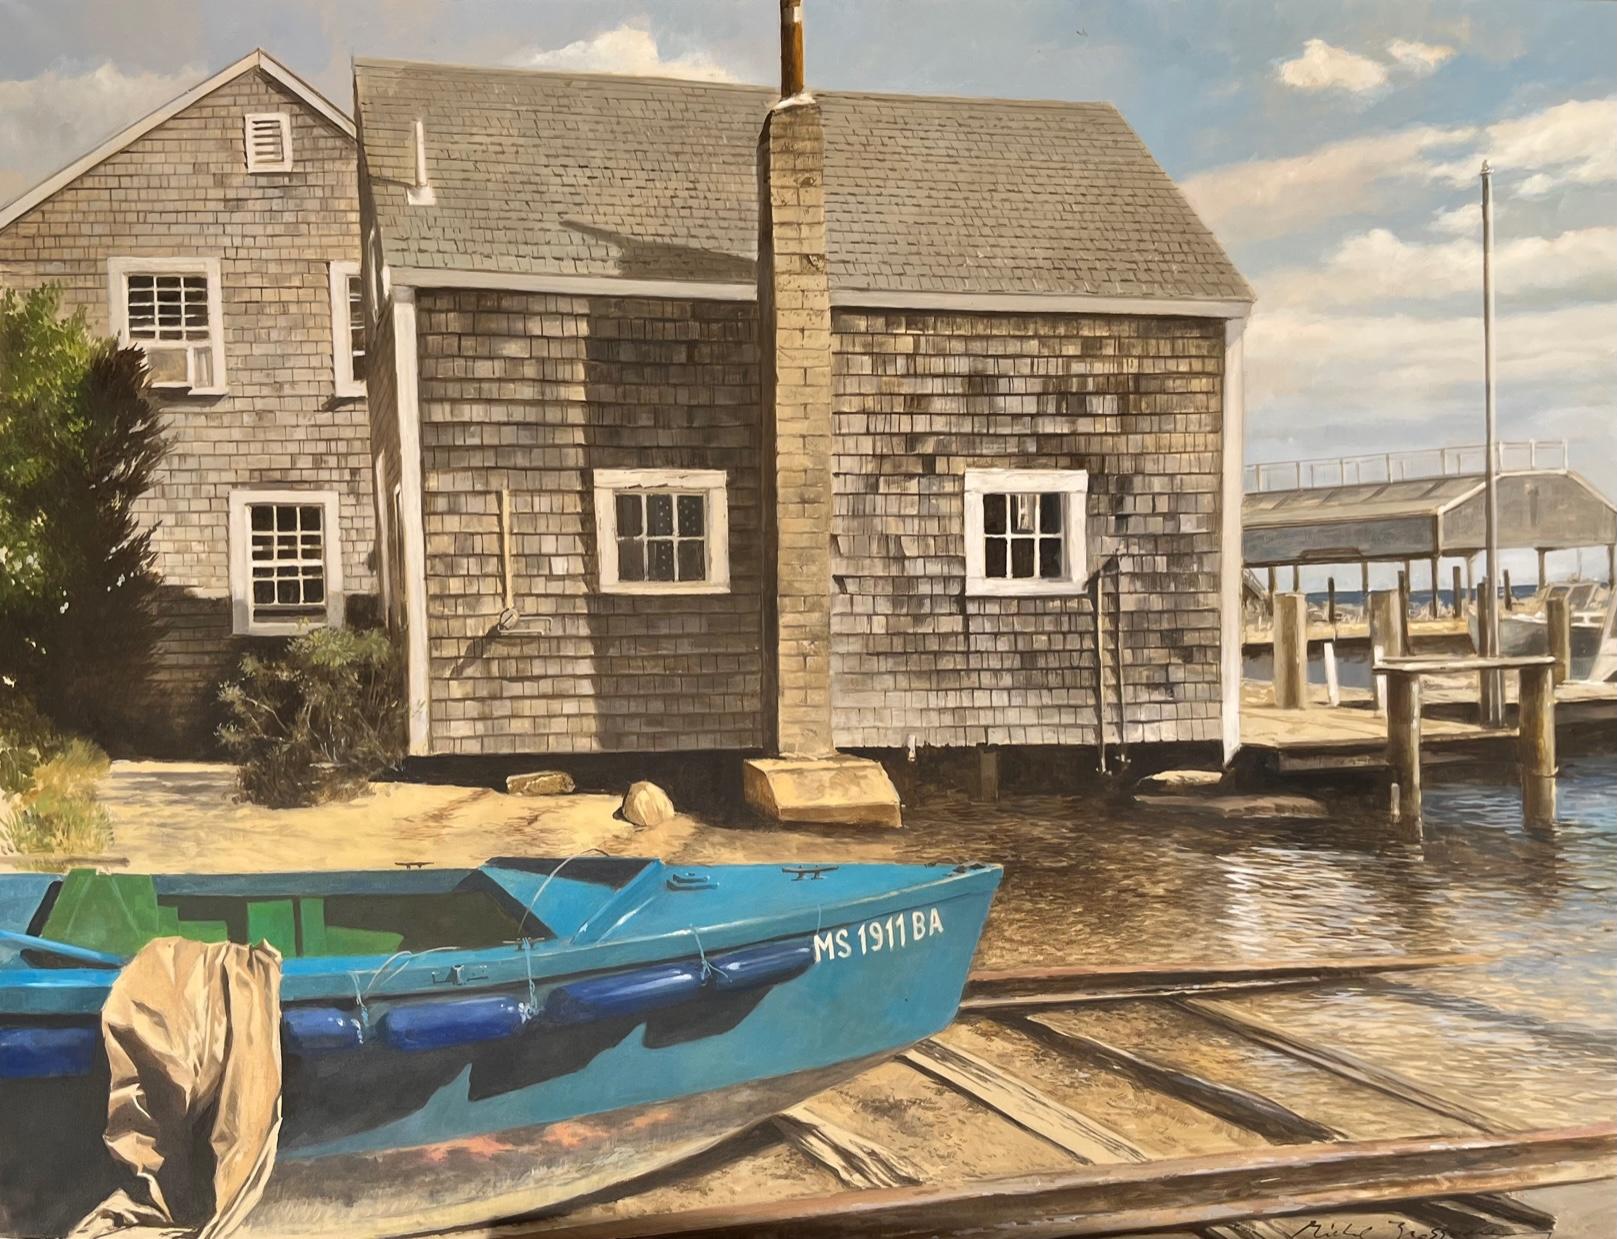 Peinture à l'huile « Petit port » d'un bateau bleu et d'une cabane enchevêtrée sur le port